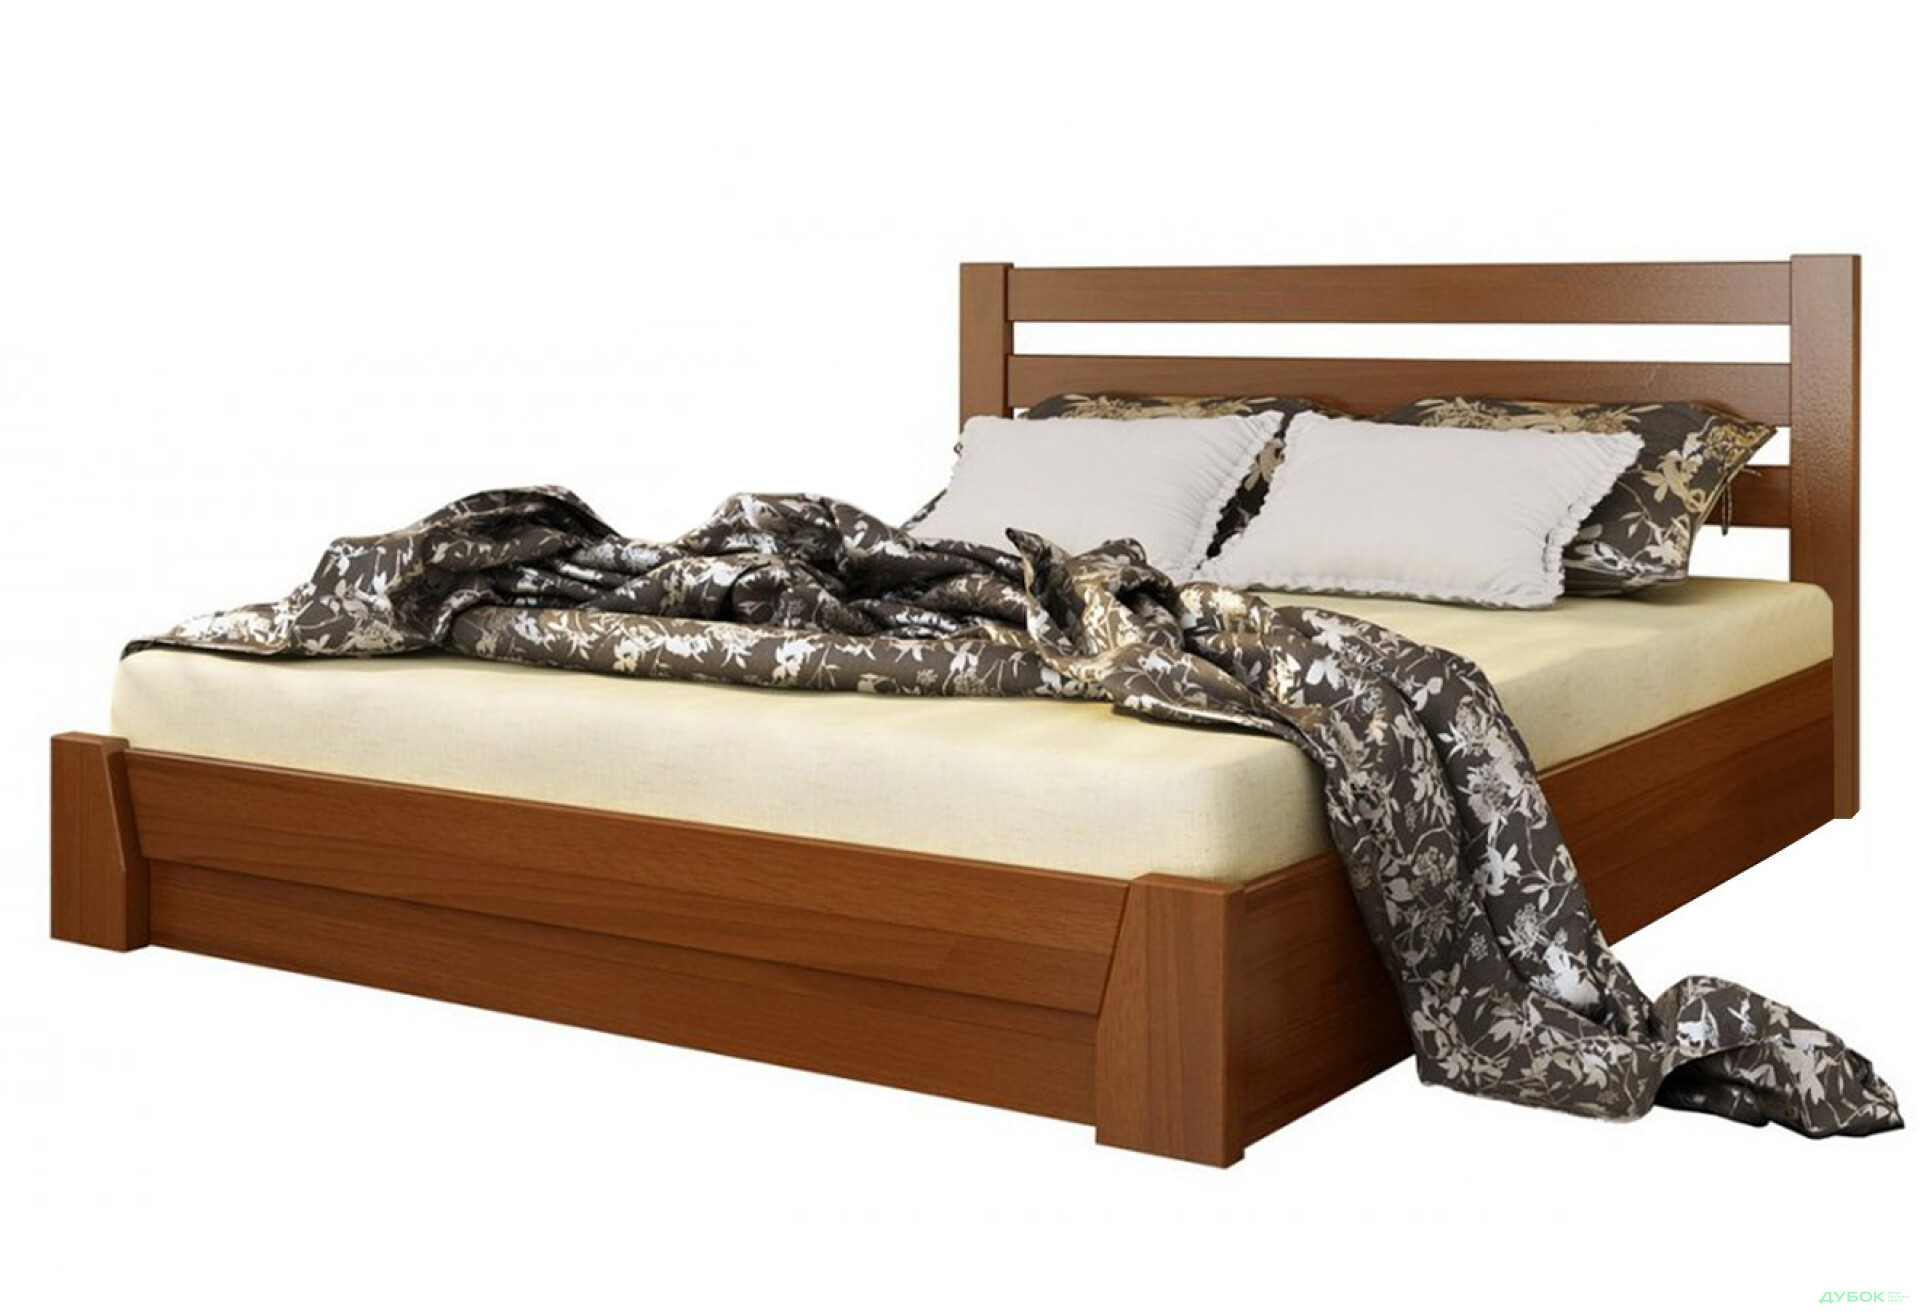 Фото 1 - Серия Тесса кровать Селена 140х200 подъемная (массив) Эстелла